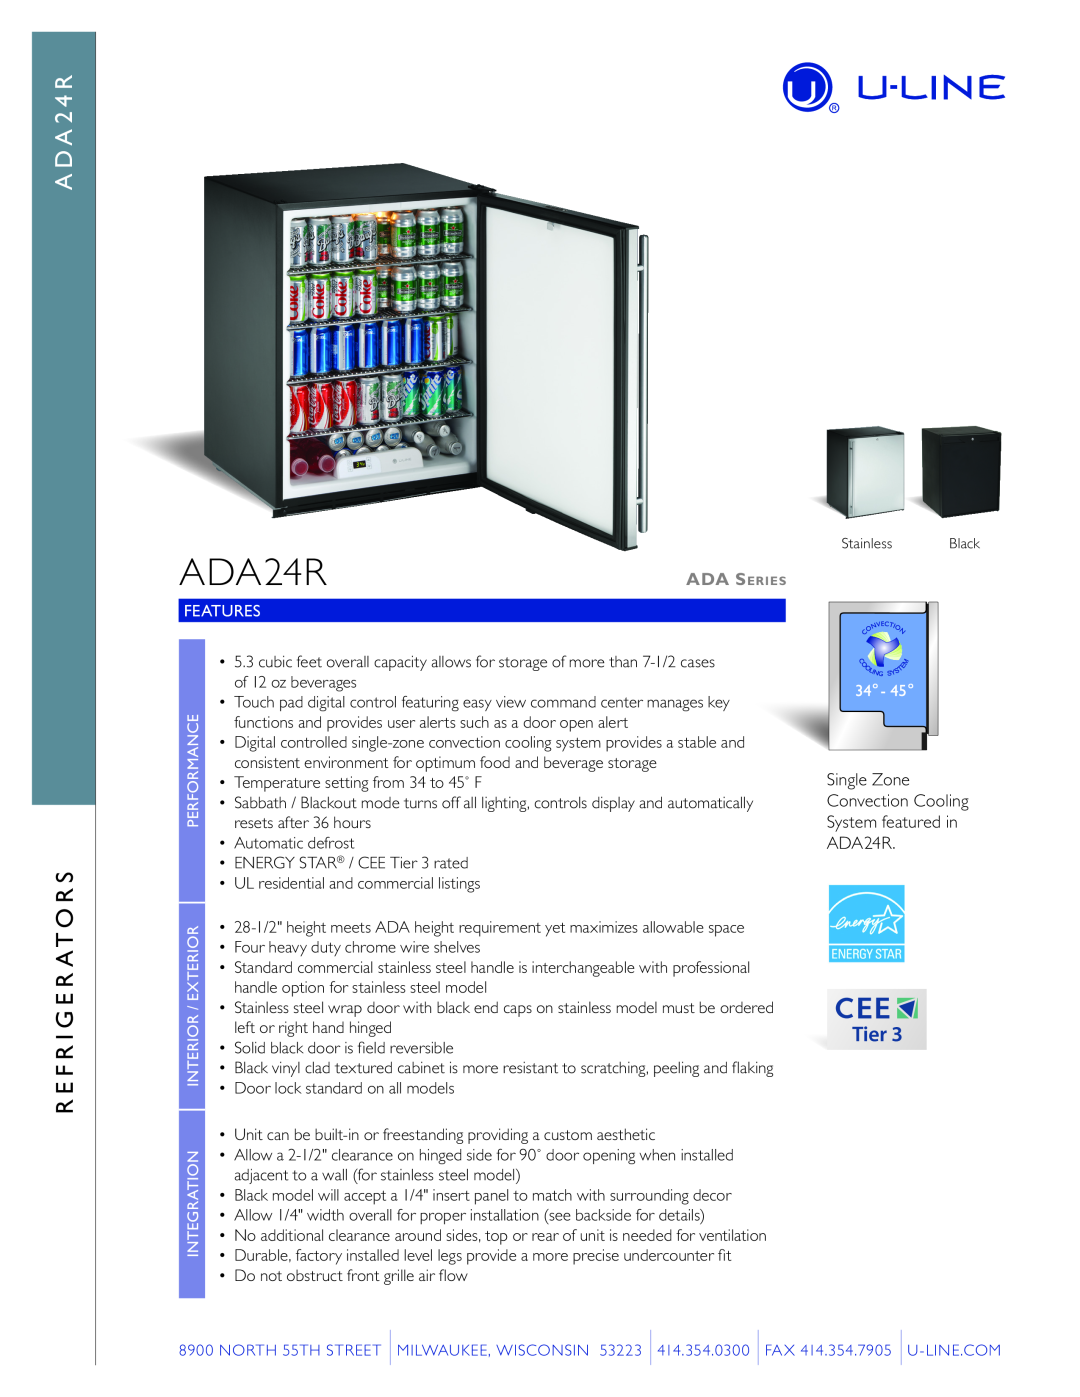 U-Line manual A D A S E R I E S, Refrigerator Models ADA24, ADA24RADA24RGL, Use and Care Guide 